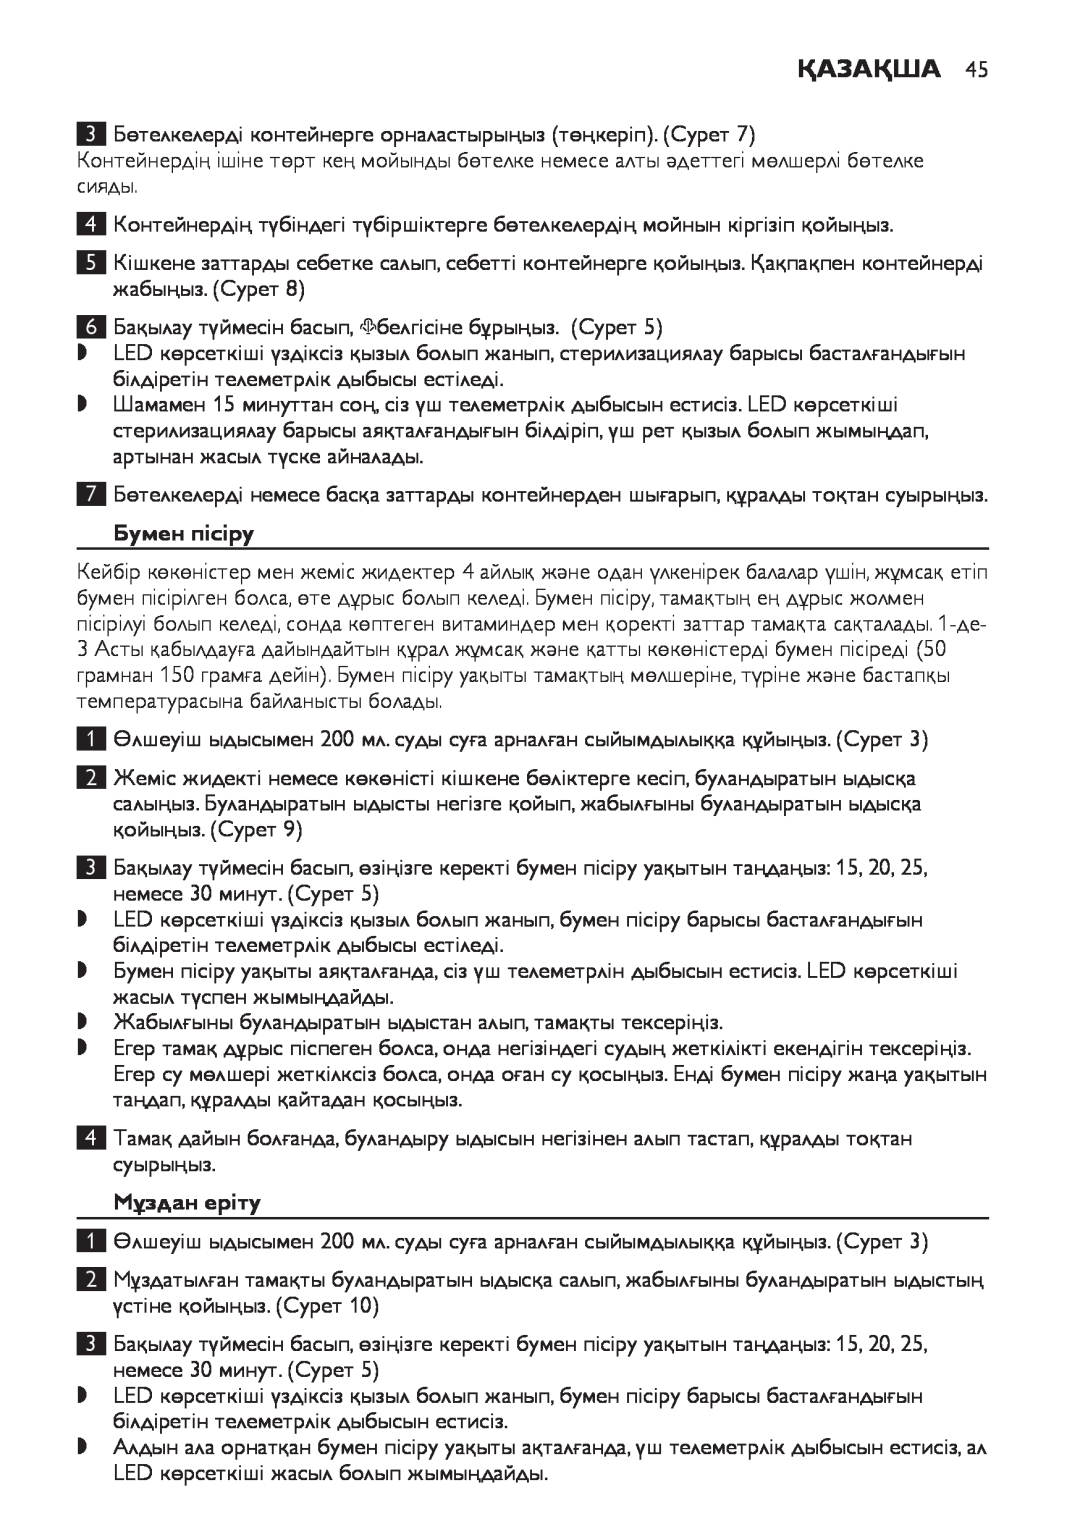 Philips SCF280 manual Бумен пісіру, Мұздан еріту, Қазақша 